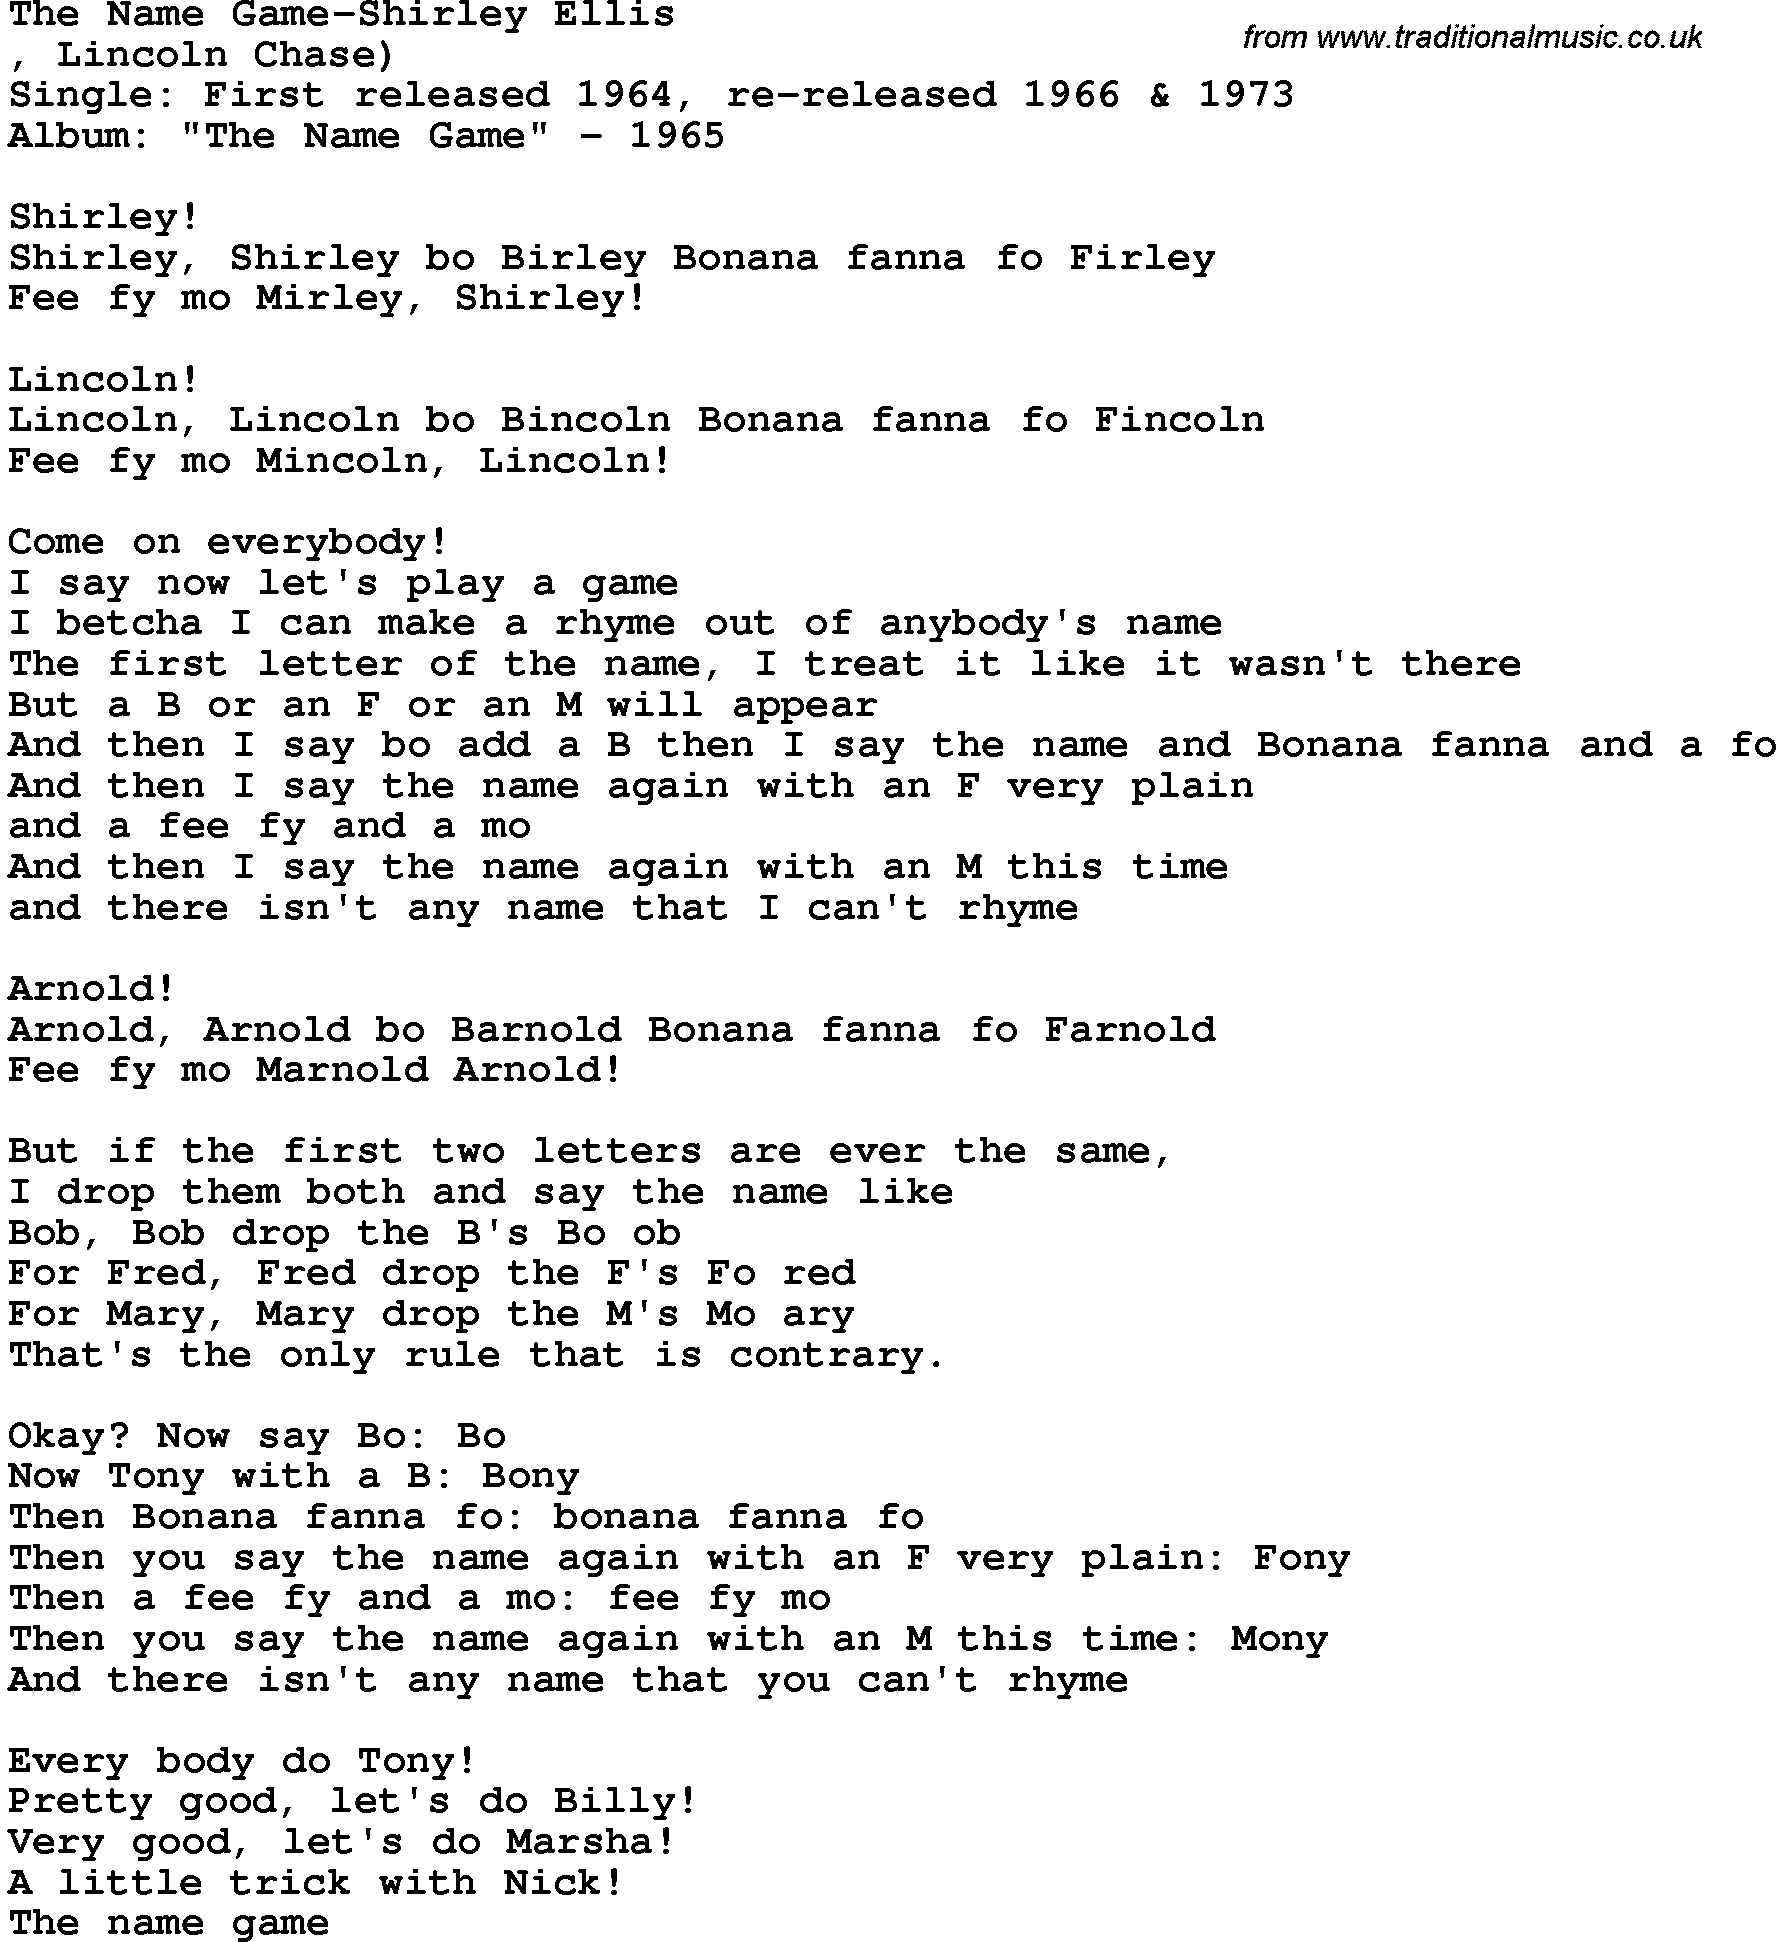 Novelty song: The Name Game-Shirley Ellis lyrics